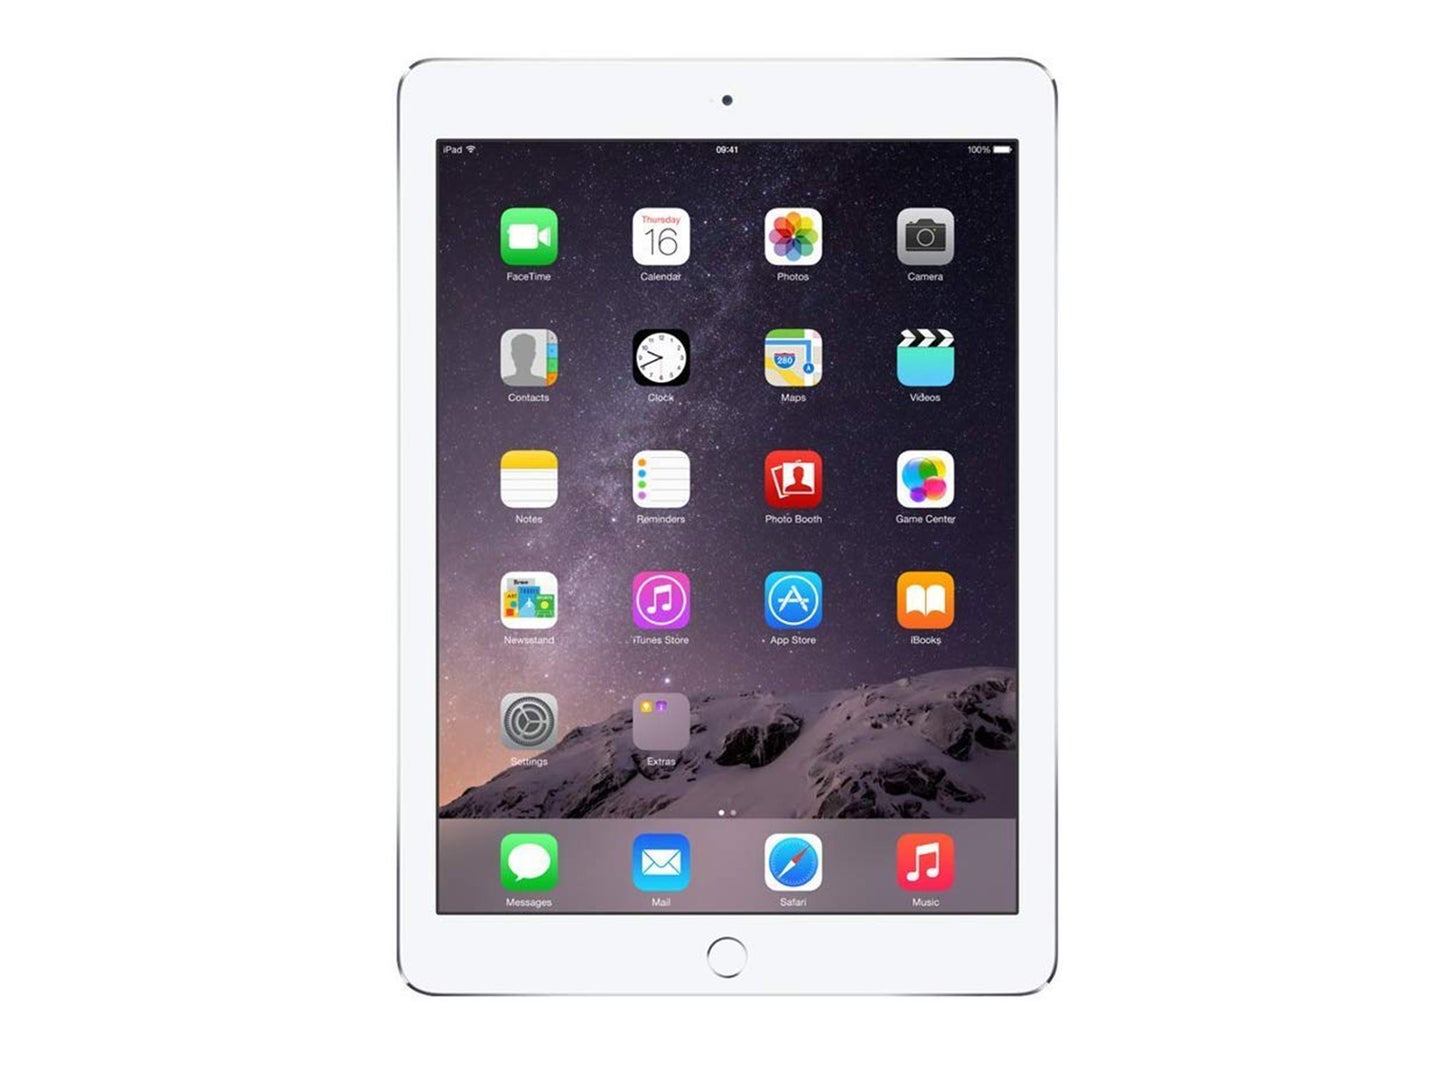 A white iPad Air on a plain background.